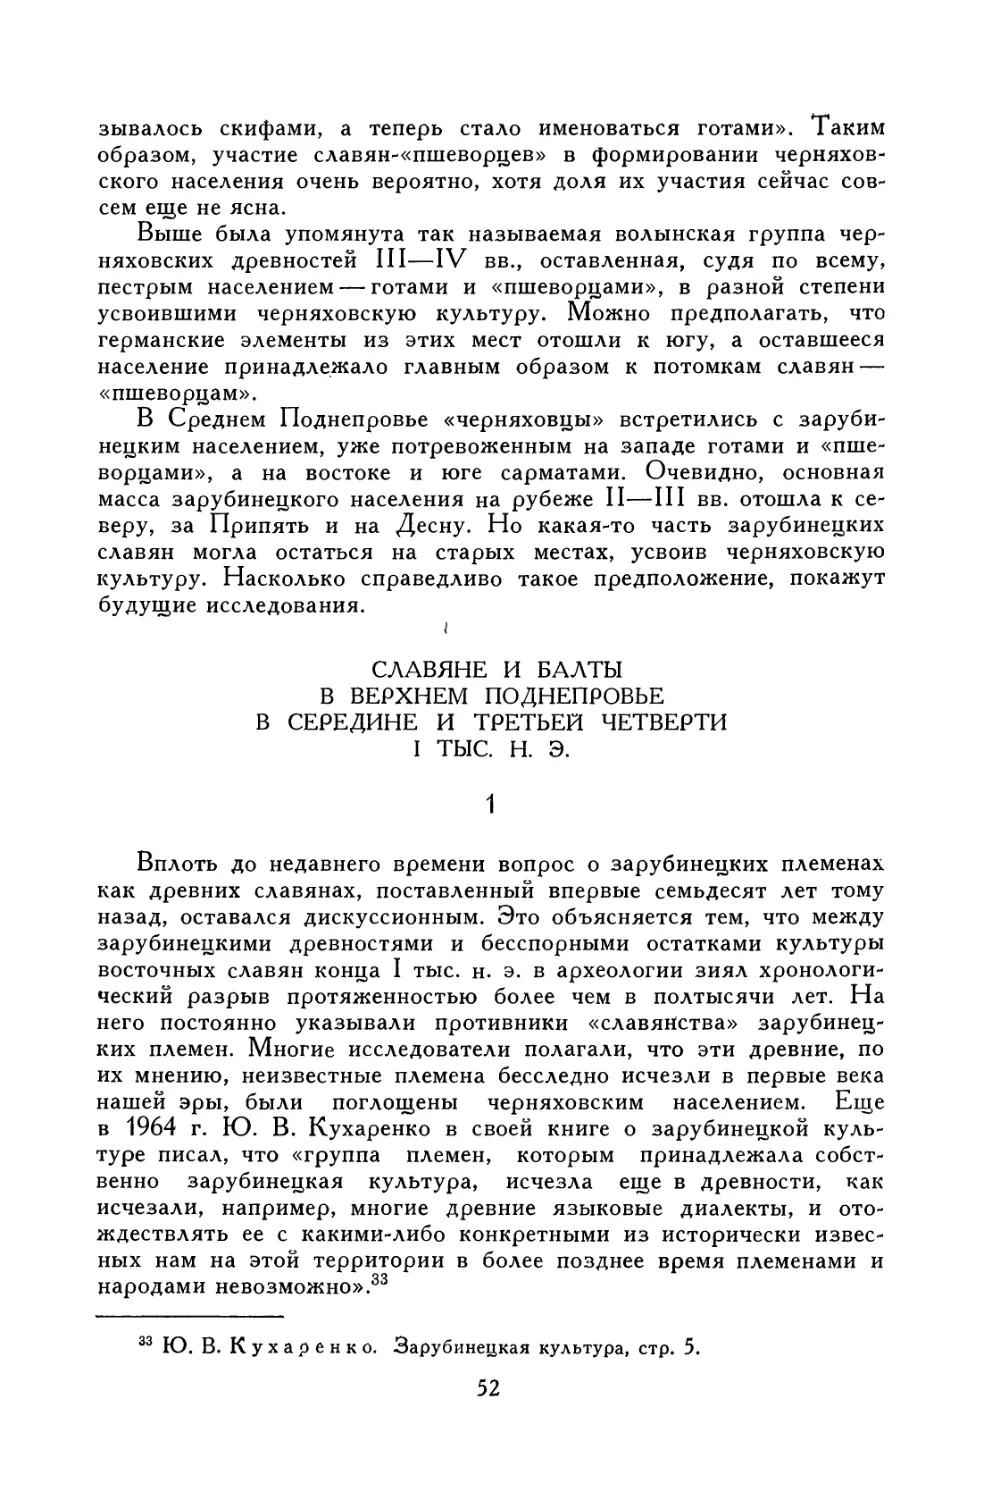 Славяне и балты в Поднепровье в середине и третьей четверти I тыс. н. э